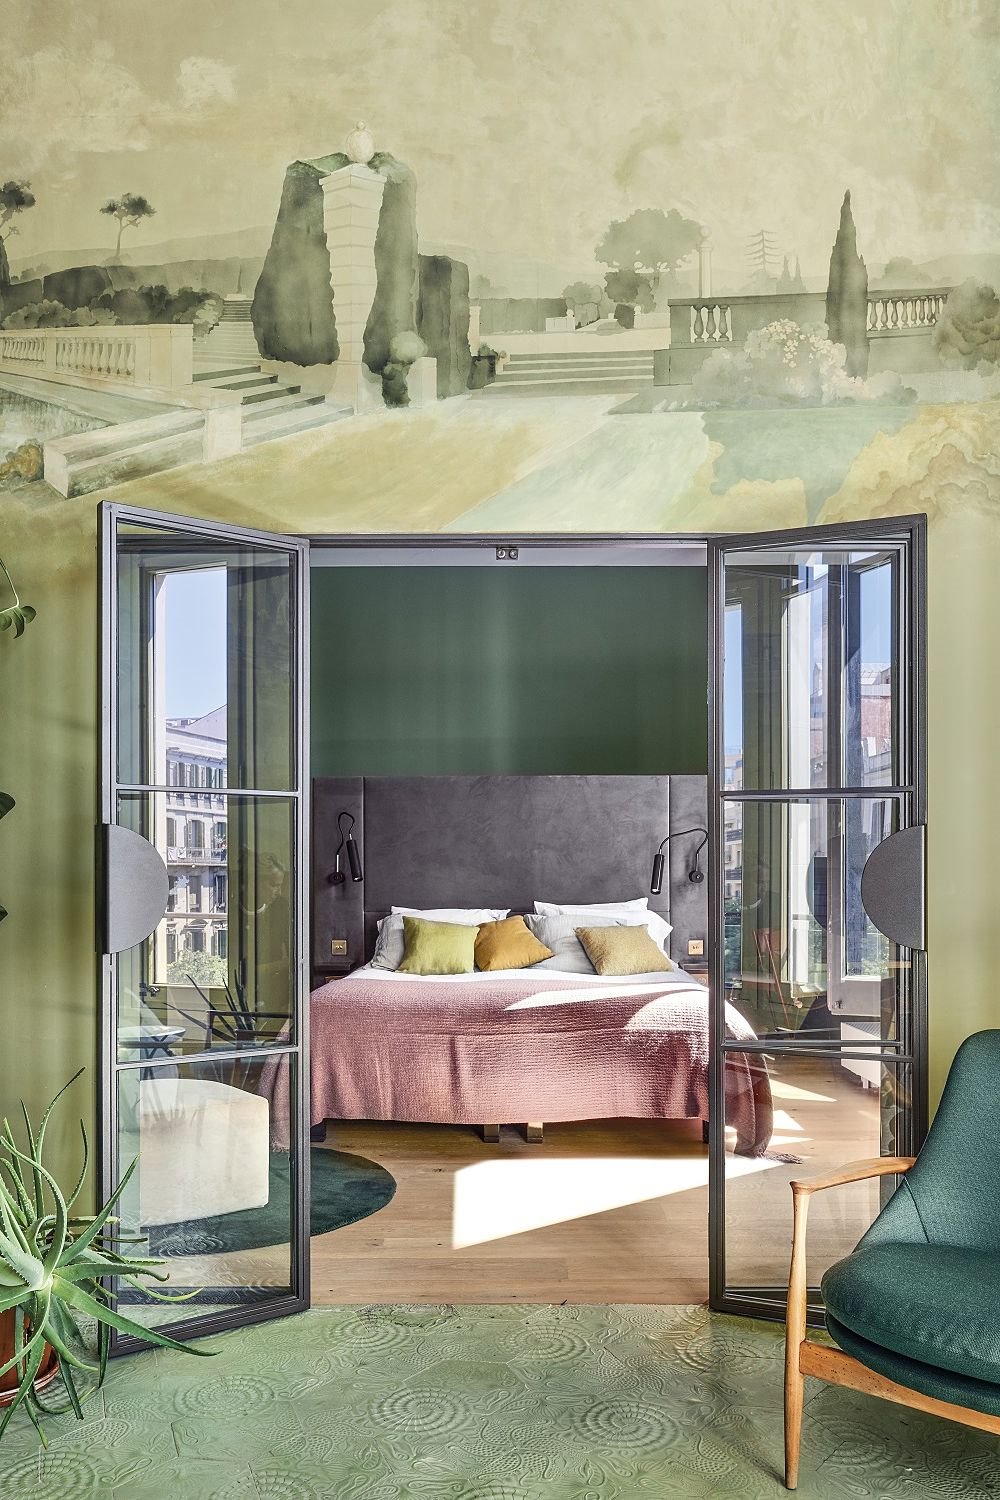 Por su suavidad, brillo y sofisticación, los cabeceros de terciopelo son un valor seguro en los dormitorios modernos. Este es diseño del arquitecto Georg Kayser.